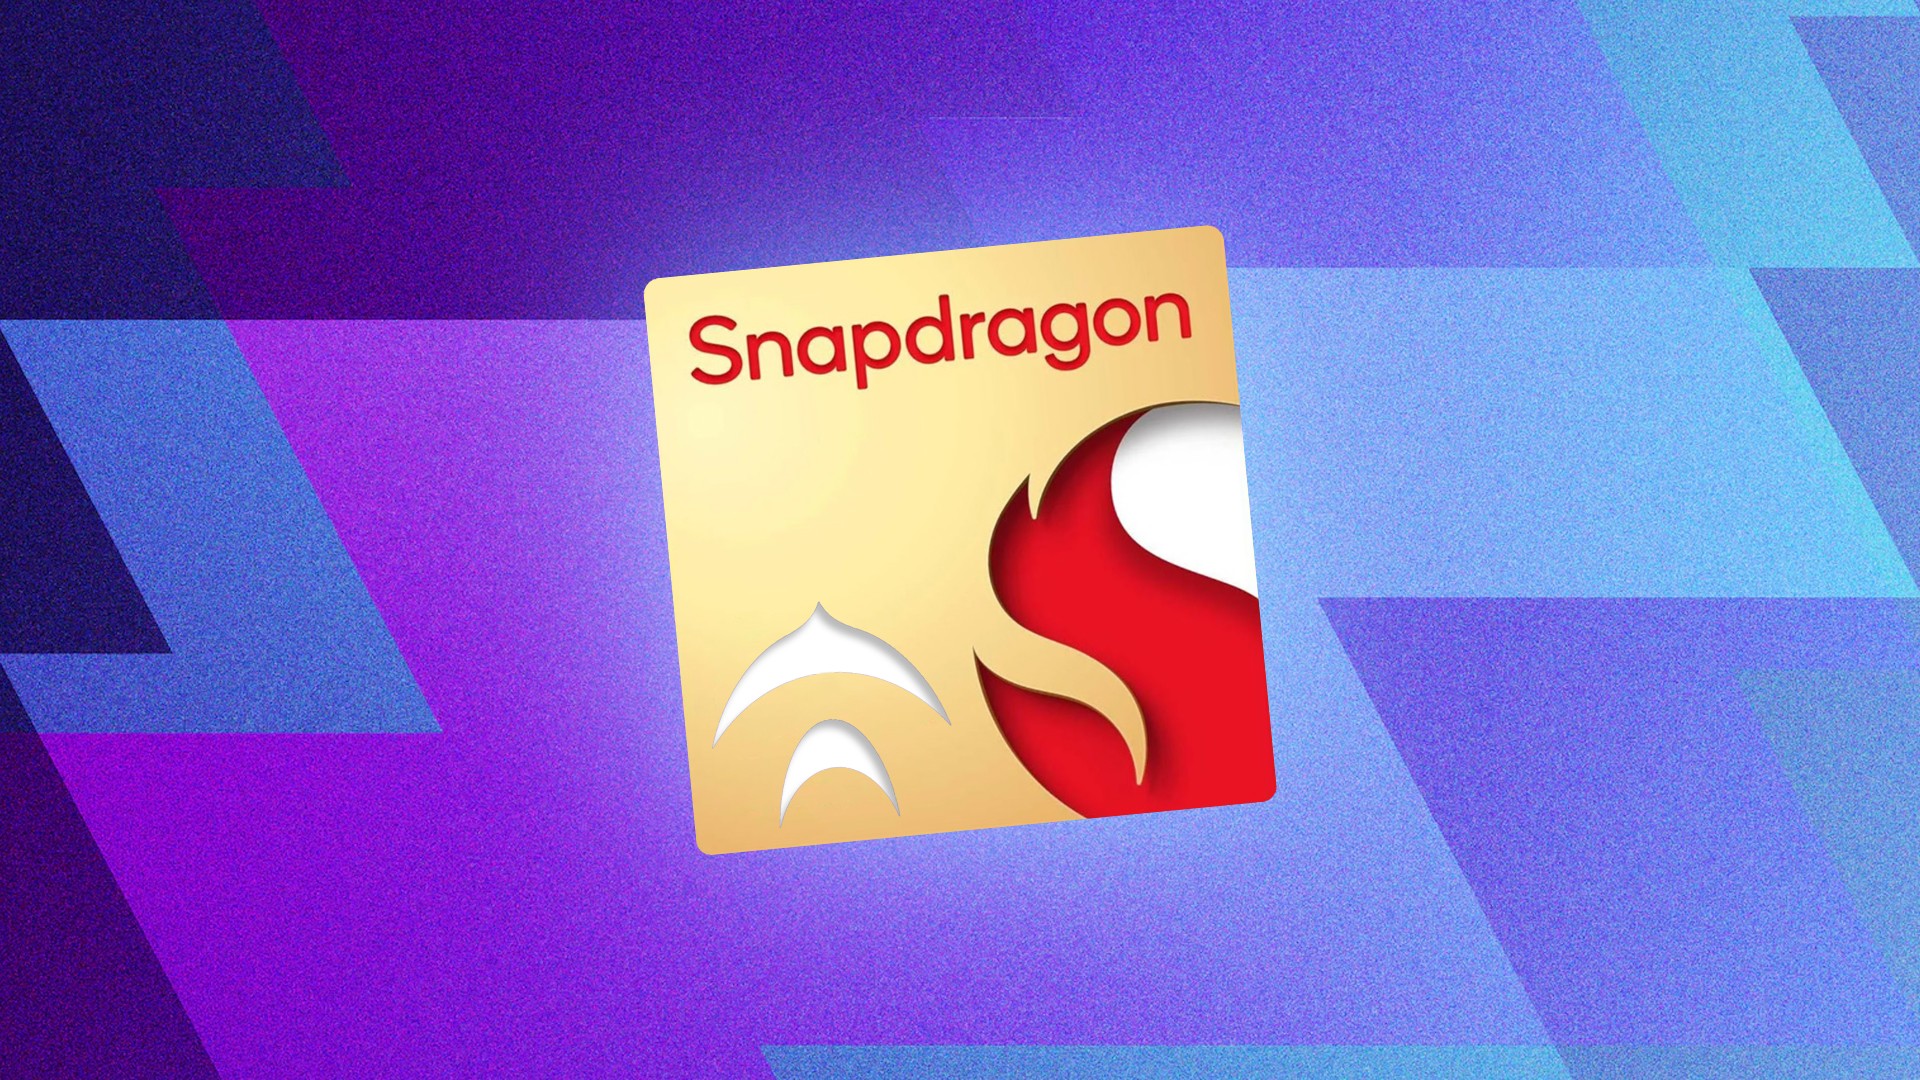 Atrasado? Snapdragon 8cx Gen 4 pode chegar em 2024 com CPU Oryon de 12  núcleos e superar Apple M2 